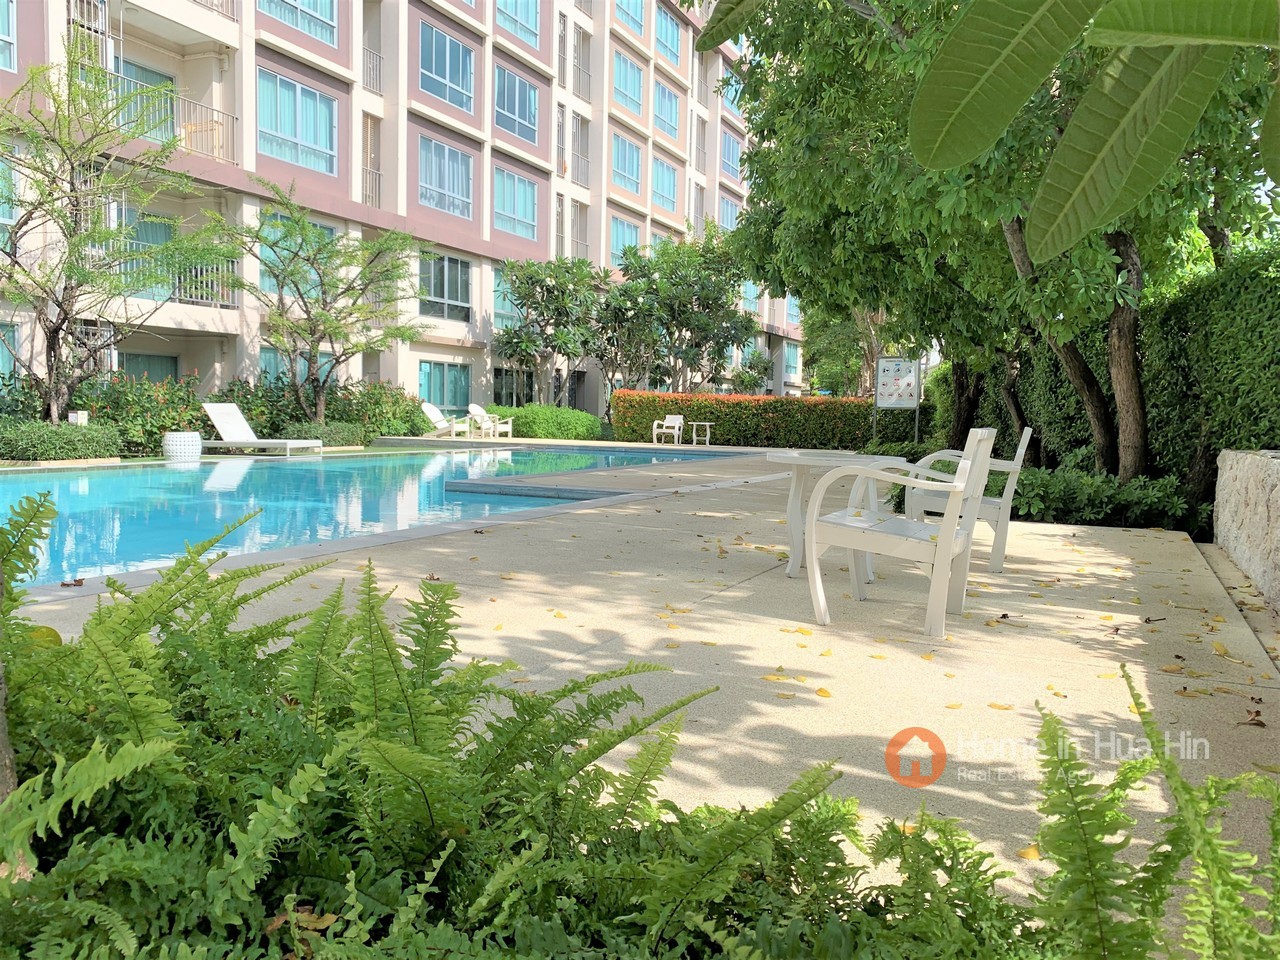 Hua Hin Beach Condo For SALE, Apartment in Thailand